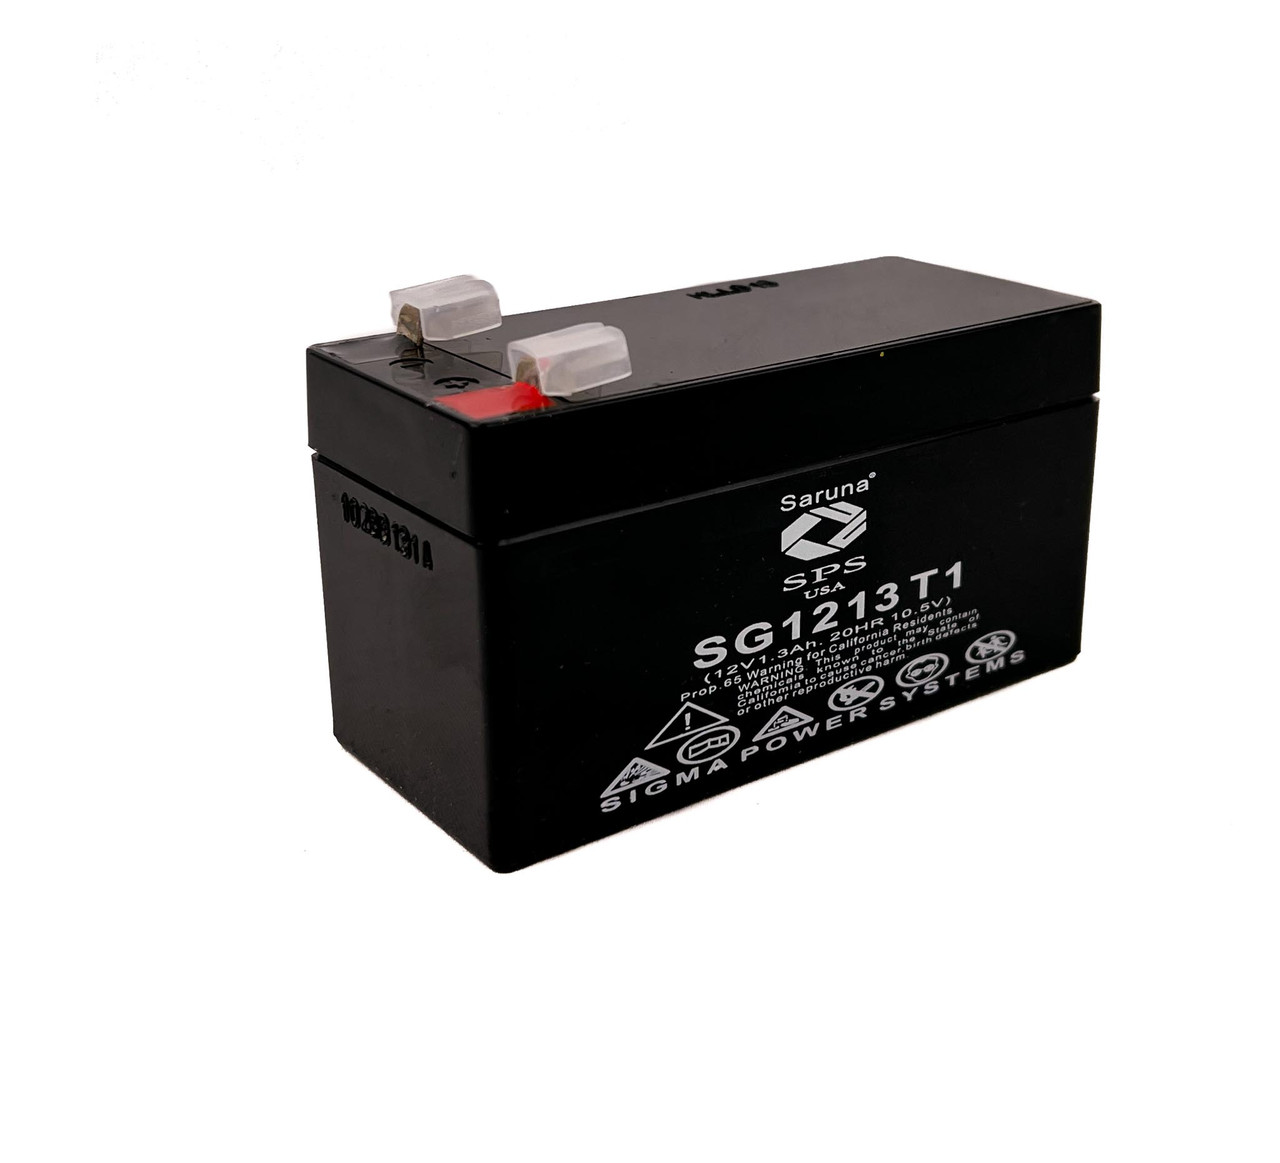 Raion Power 12V 1.3Ah Non-Spillable Replacement Rechargebale Battery for Douglas DG121.2